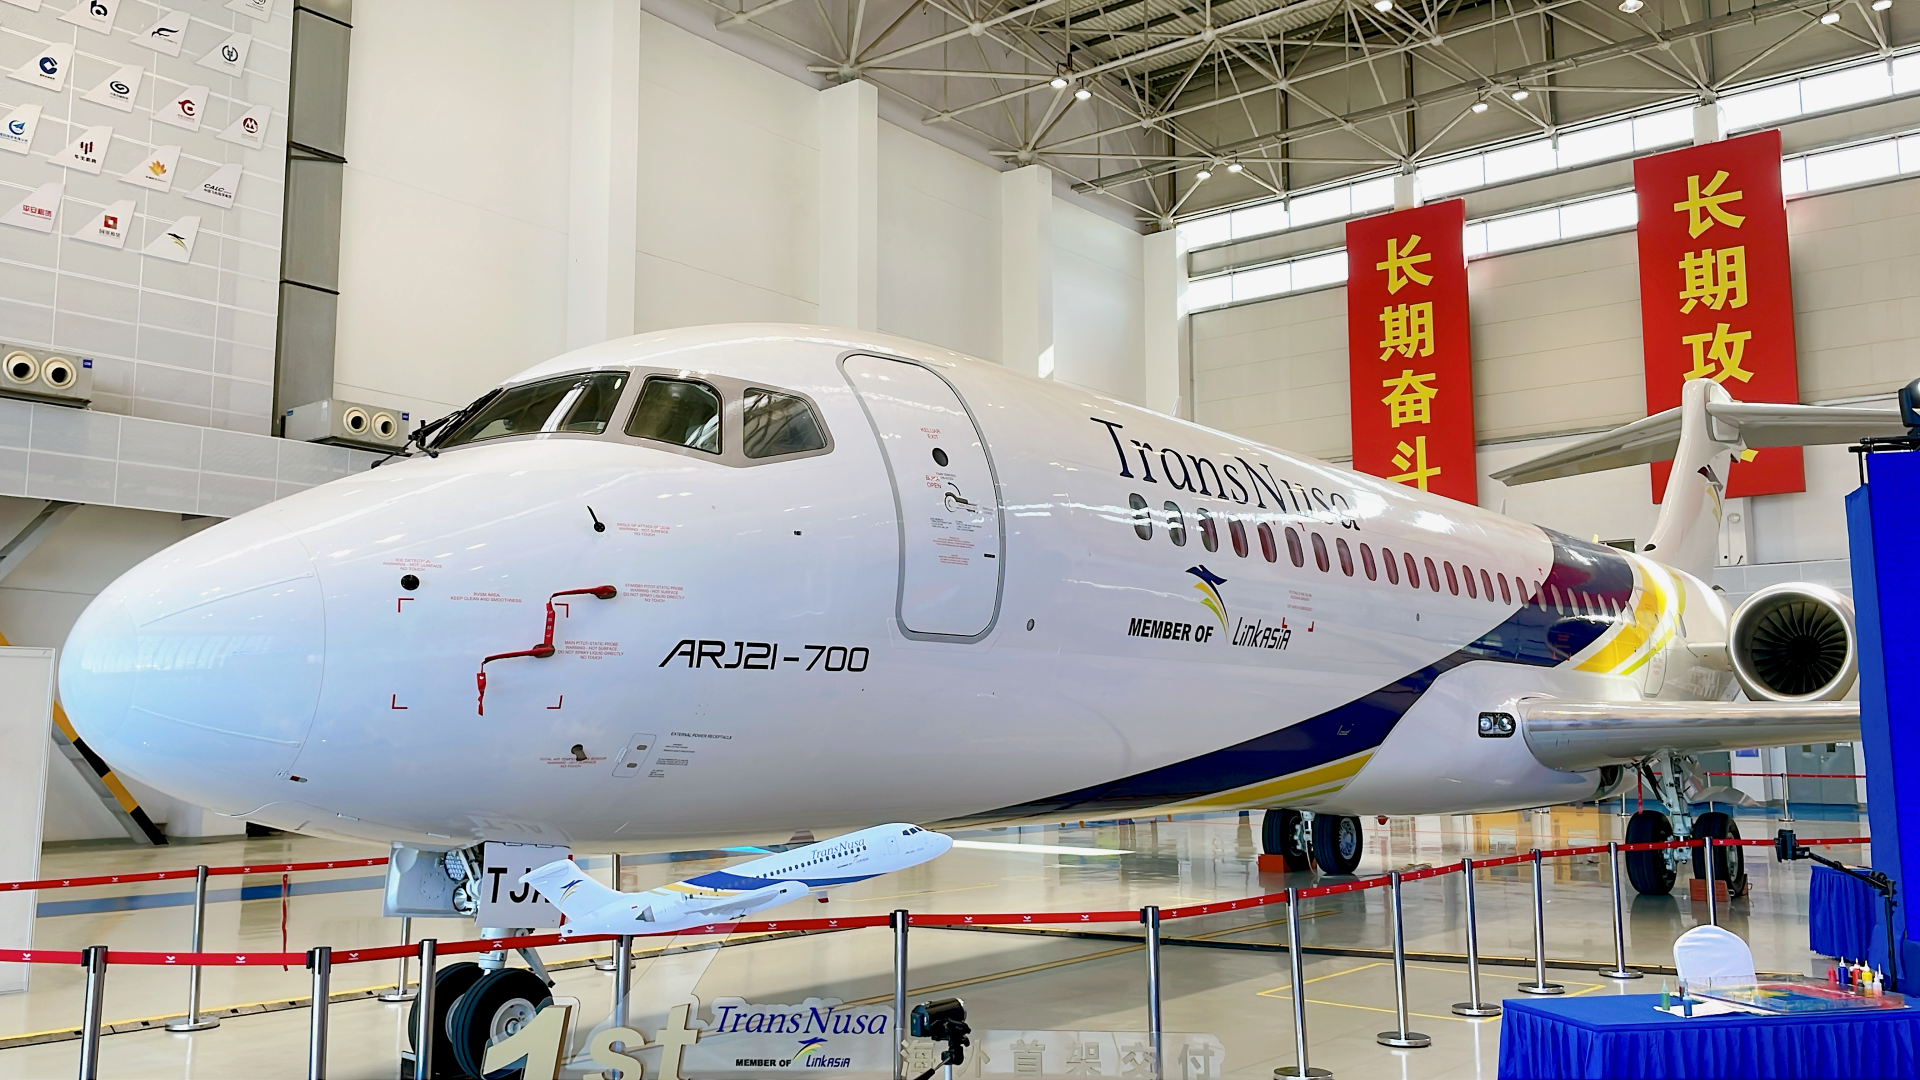 中国喷气式支线客机arj21首次交付海外